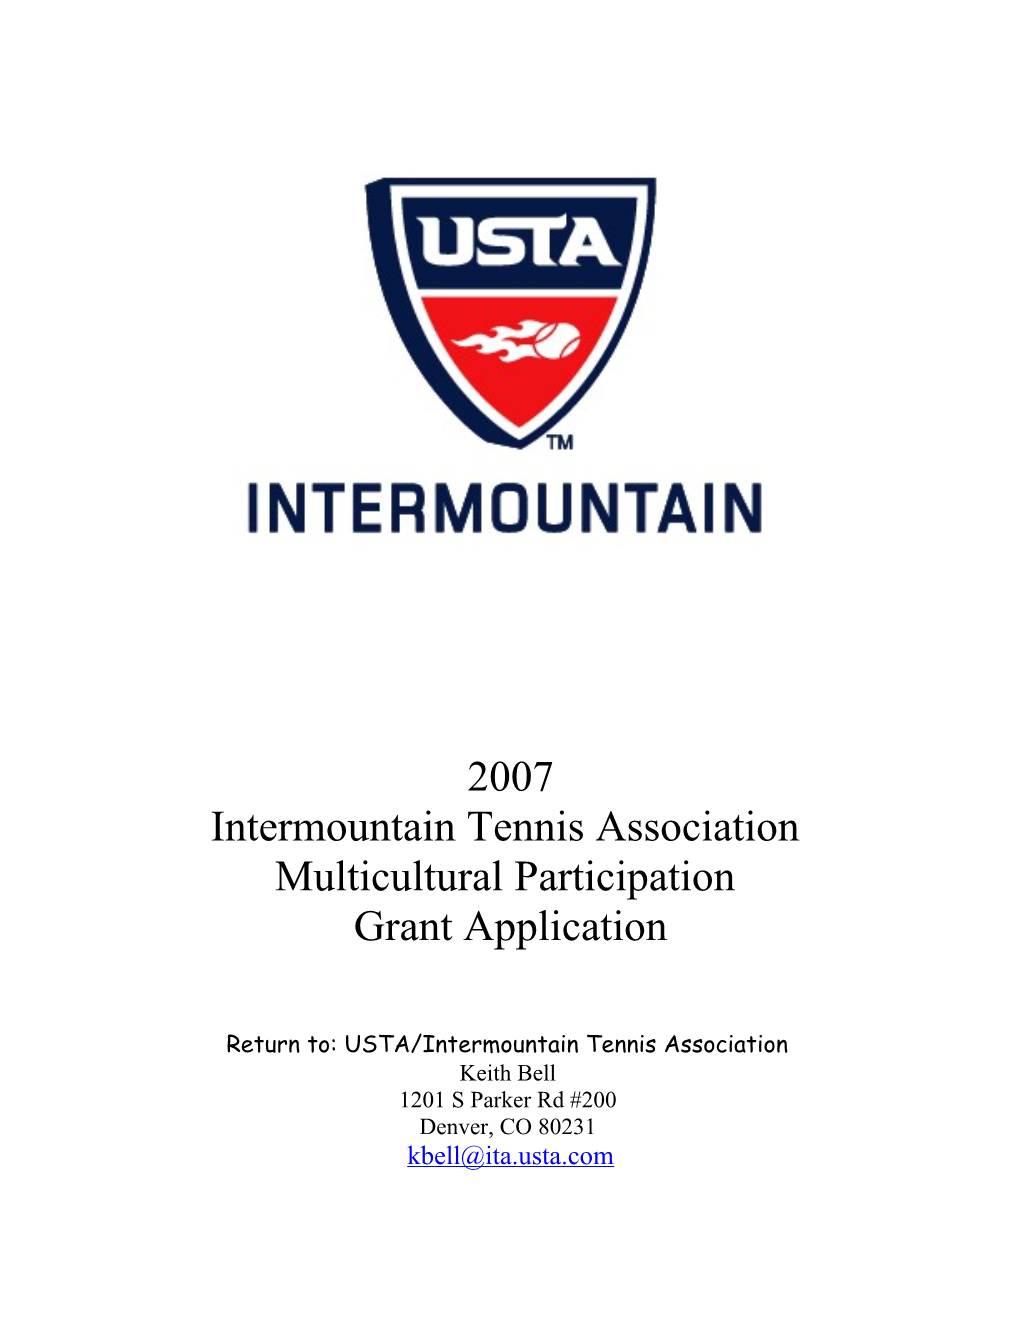 Return To: USTA/Intermountain Tennis Association